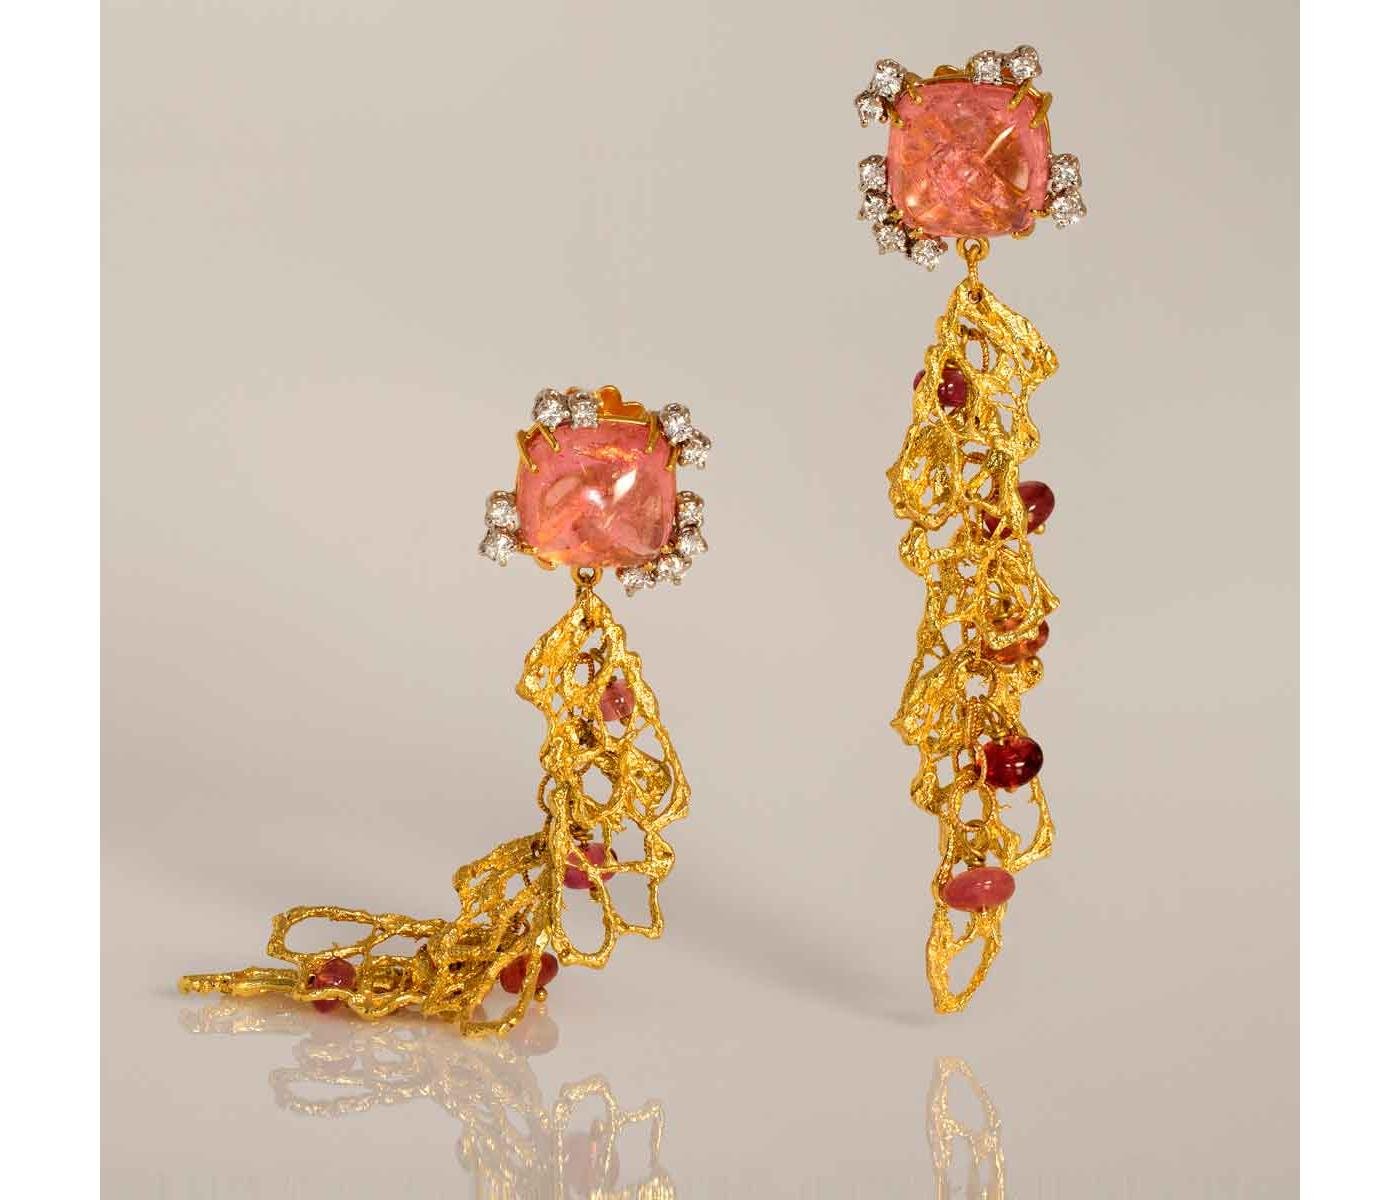 Earrings by Felter Gioielli